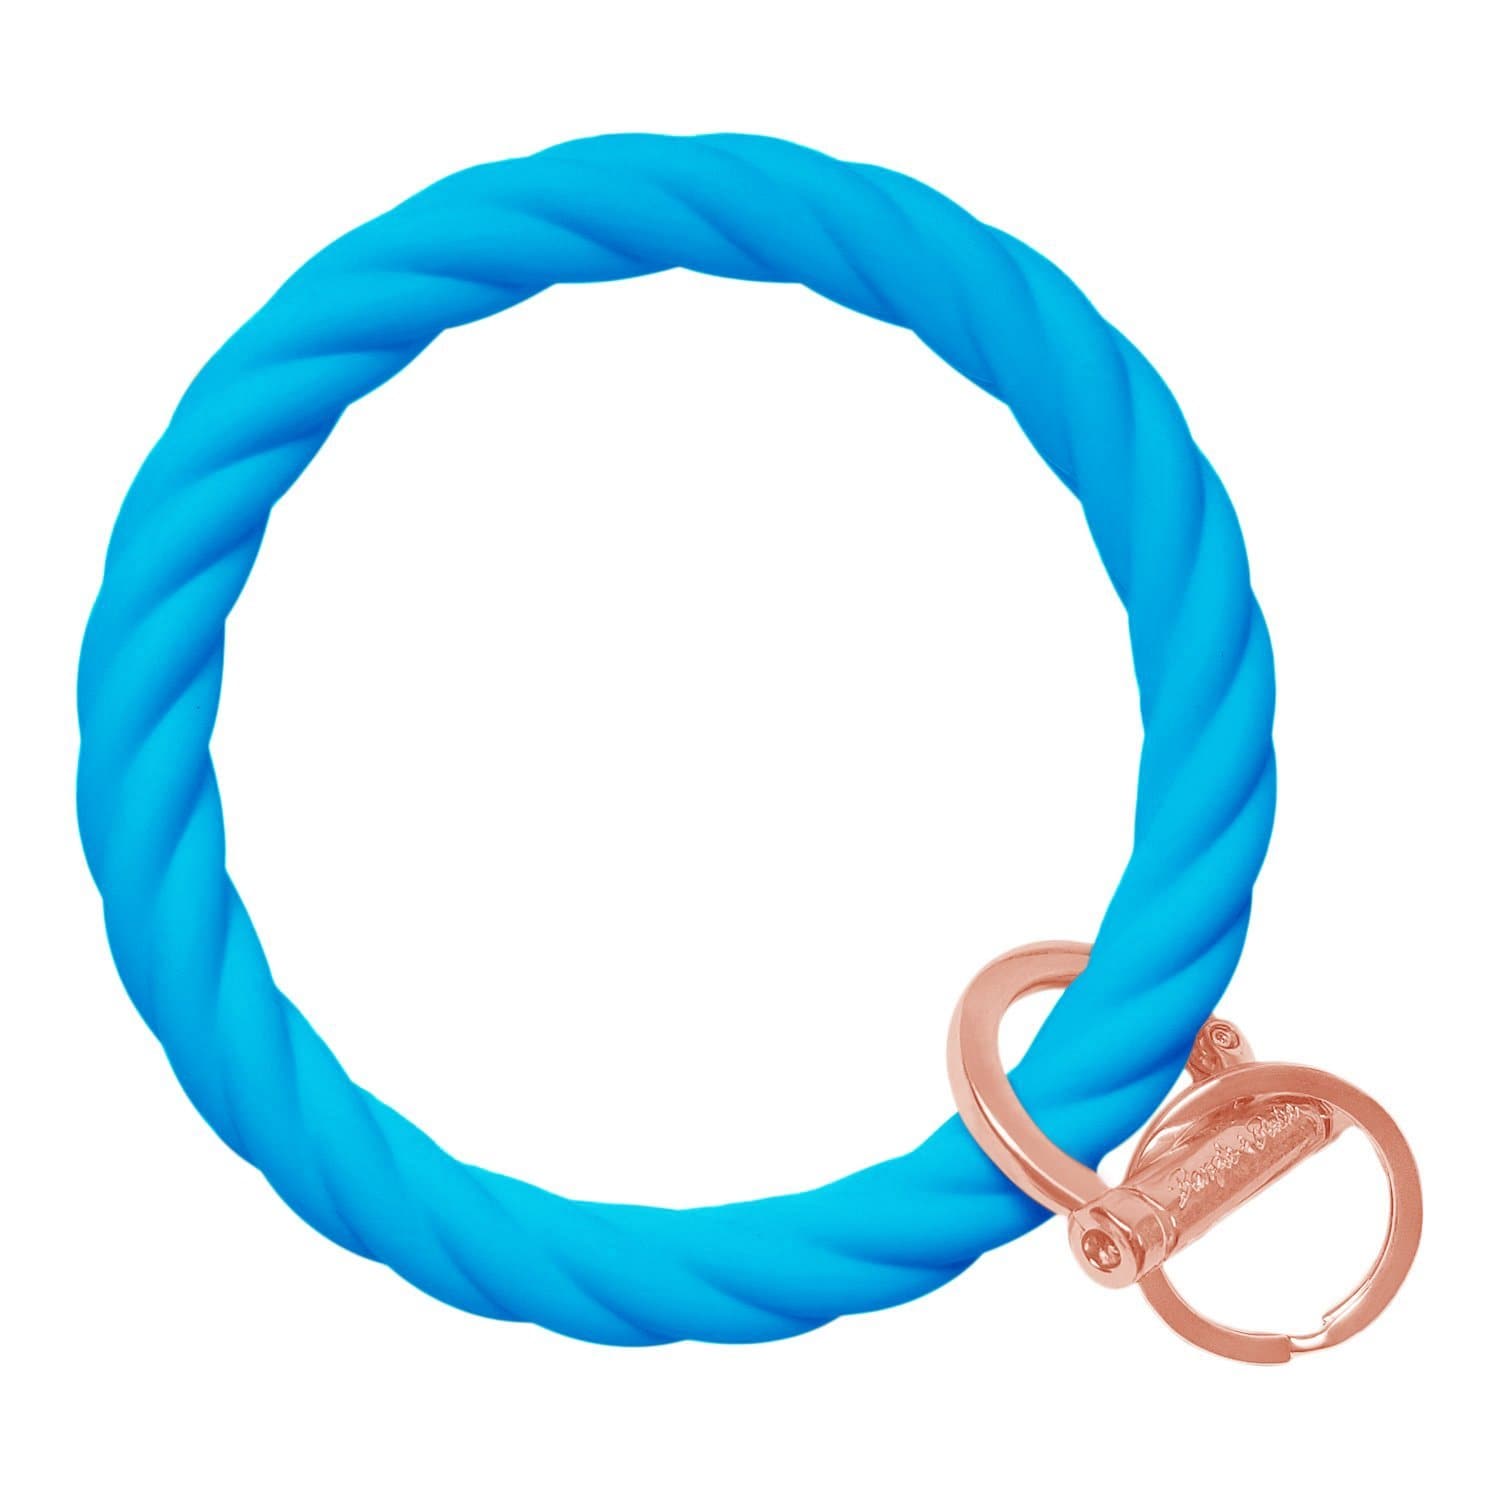 Twisted Bangle & Babe Bracelet Key Ring Twist - Bright Blue Rose Gold 